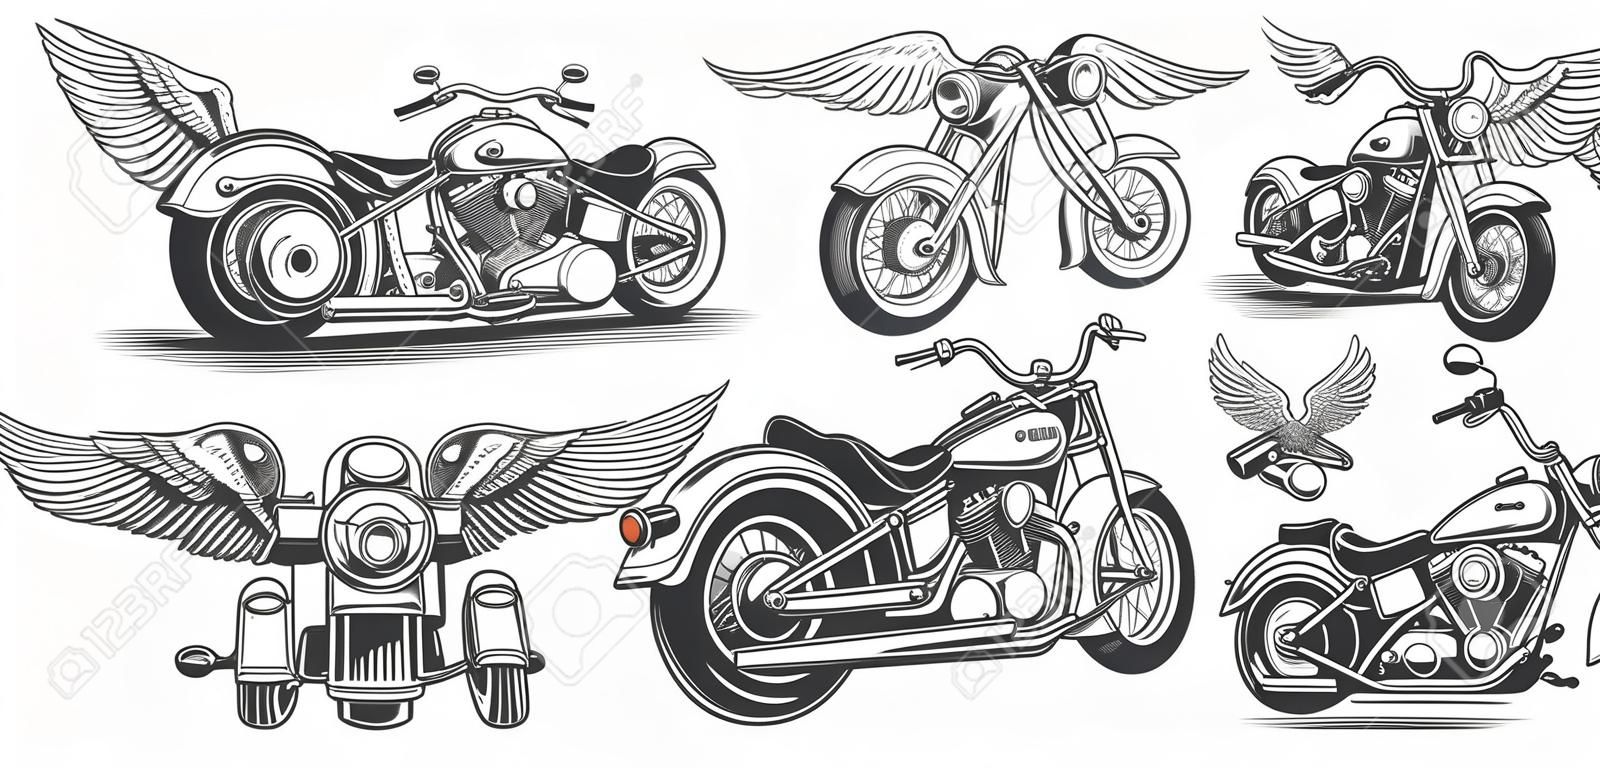 Conjunto de ilustrações, ícones de motocicleta vintage desenhada à mão em vários ângulos, crânios, asas no estilo de gravura. Chopper clássico em estilo de tinta. Imprimir, gravura, modelo, elemento de design